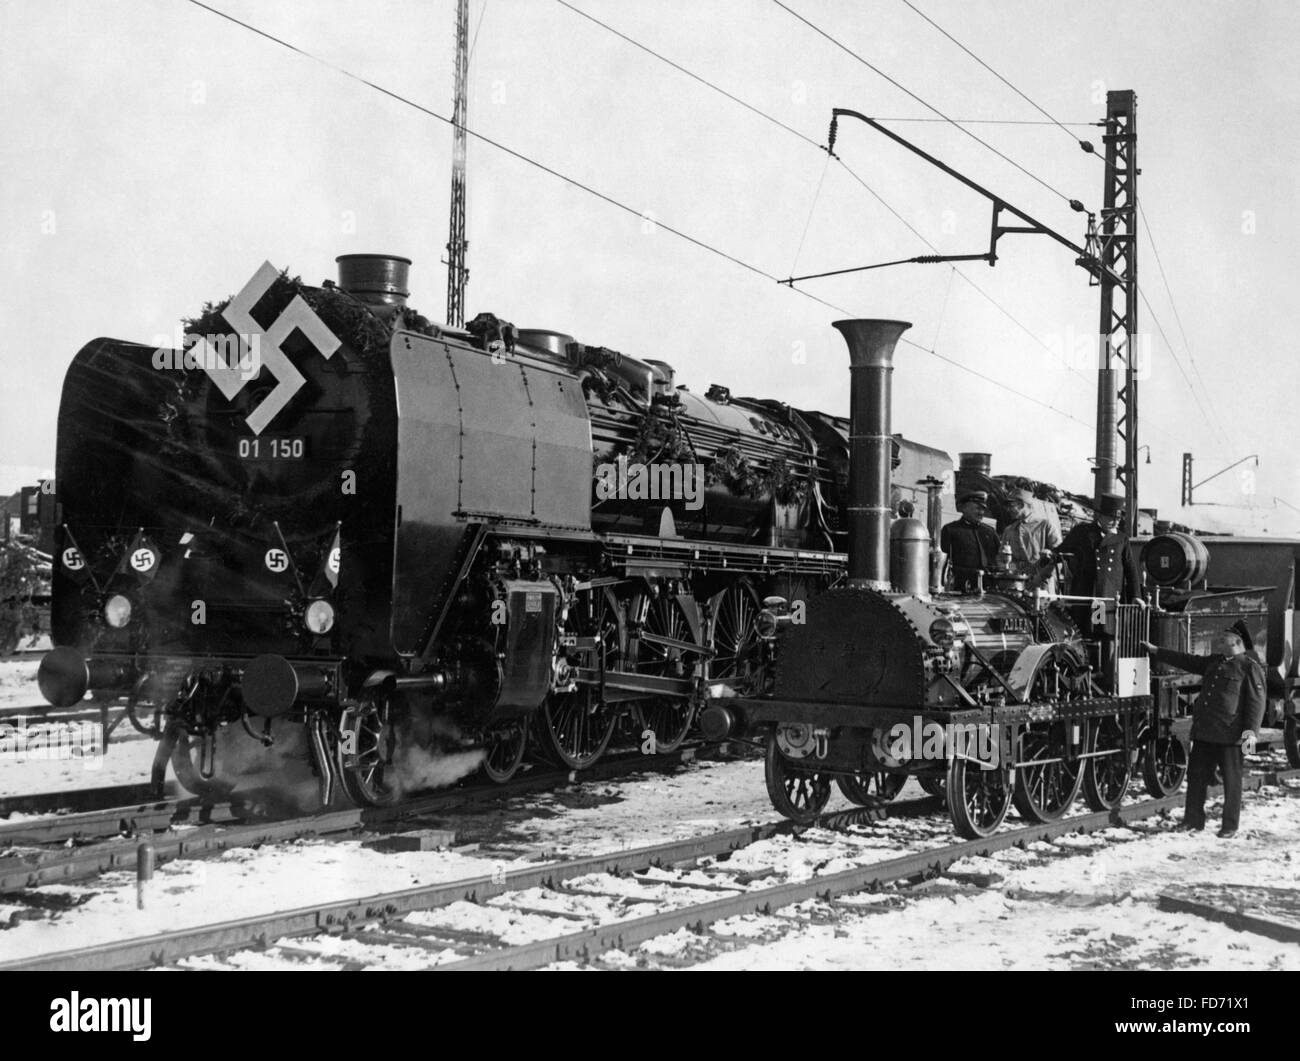 Anniversary exhibition of the Deutsche Reichsbahn (German Reich Railway) in Nuremberg, 1935 Stock Photo